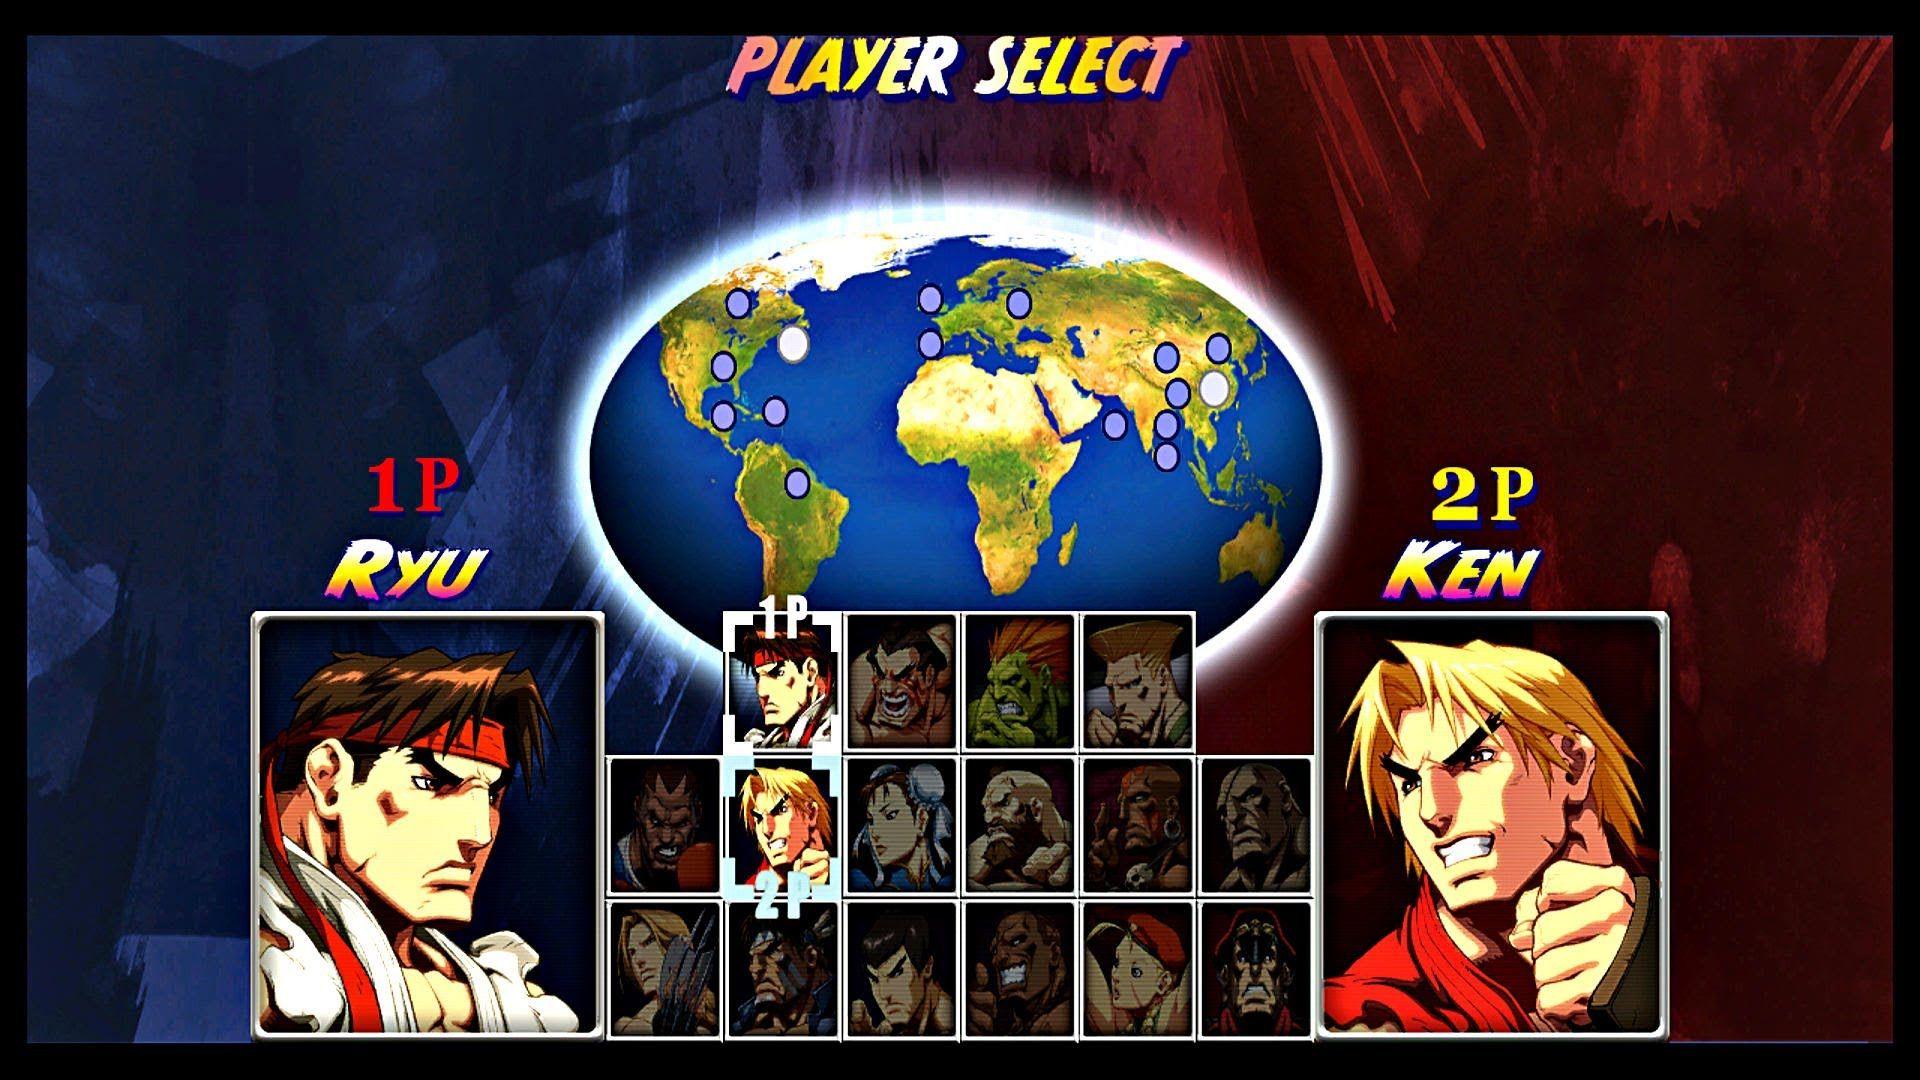 Super Street Fighter 2 Turbo, HD Remix